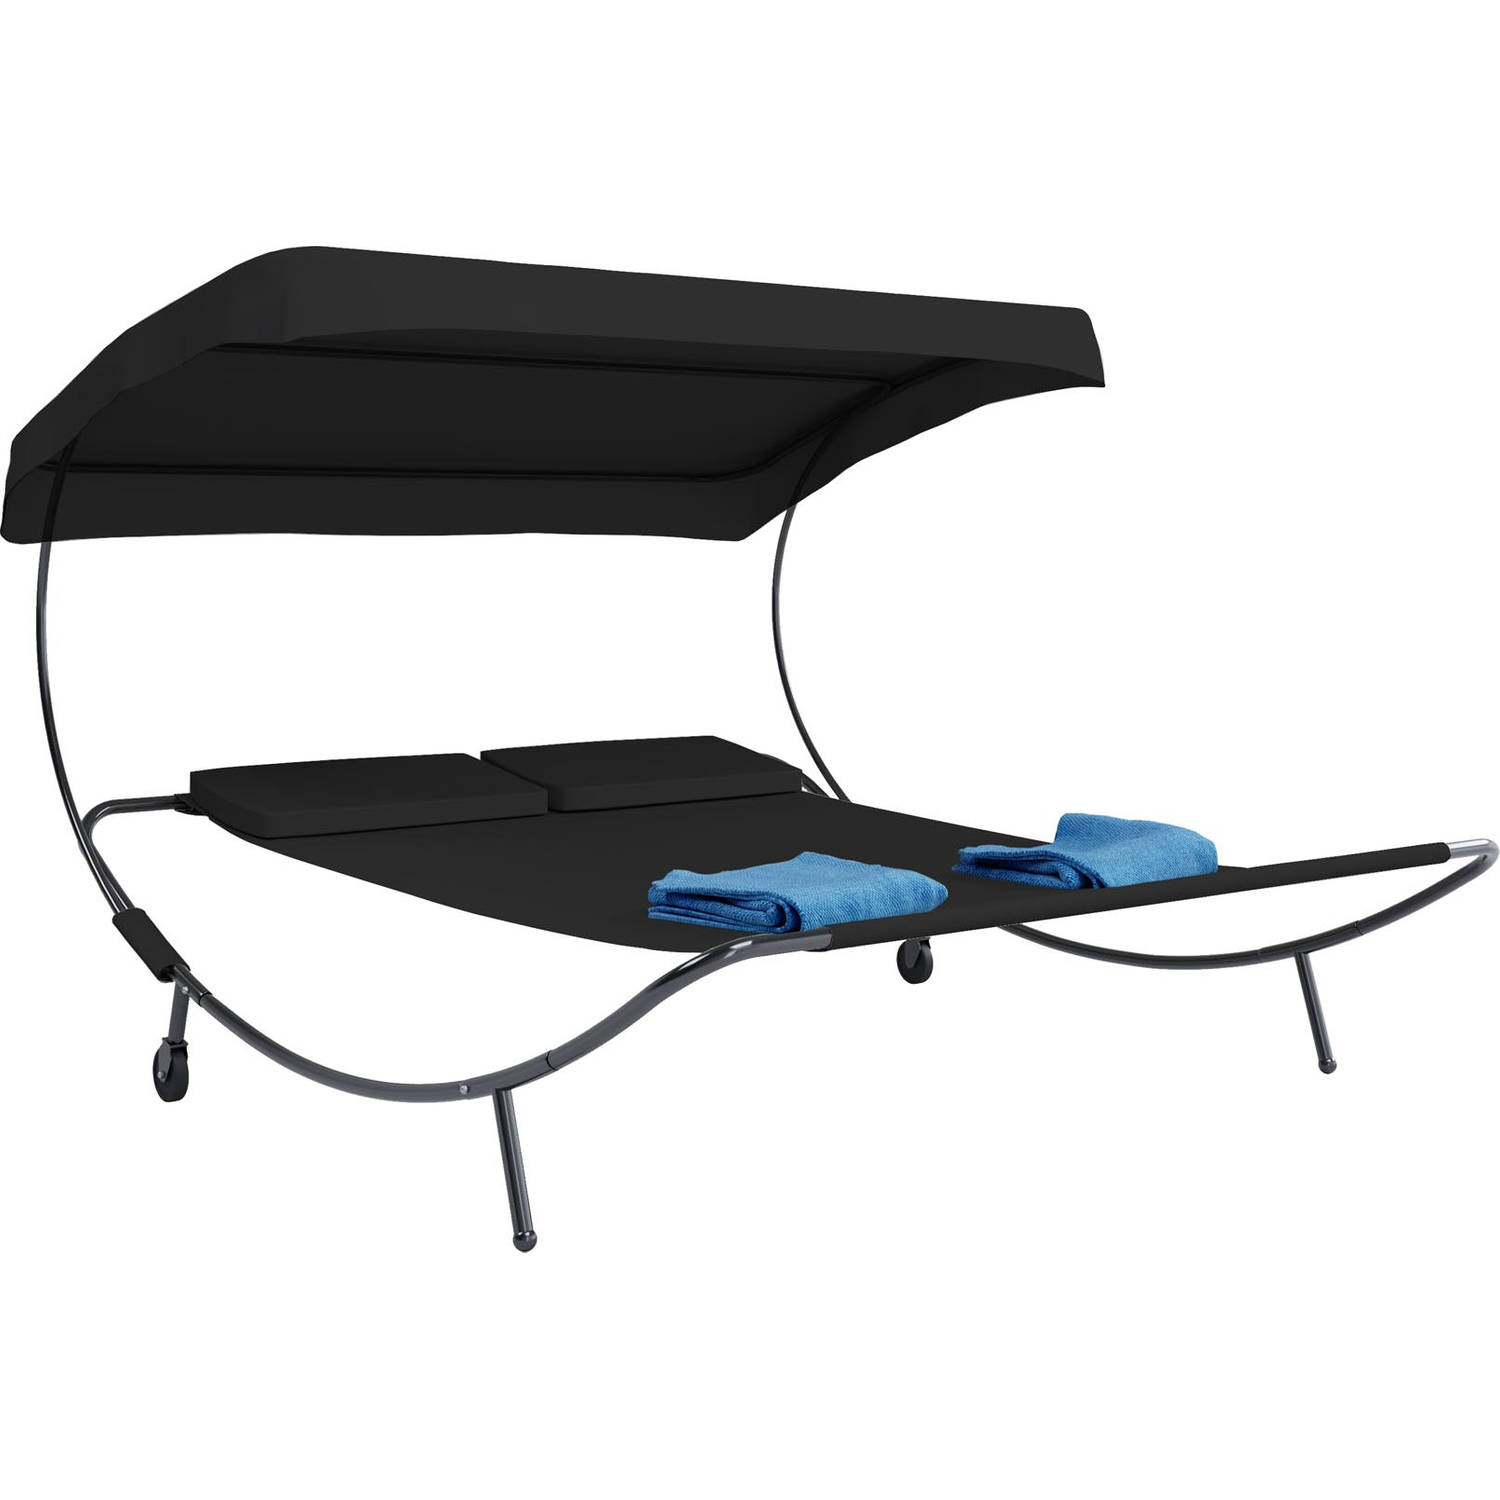 Bindox hangmat, hangendeligstoel dubbele 130x120cm met dak, wielen, 2 kussens zwart.